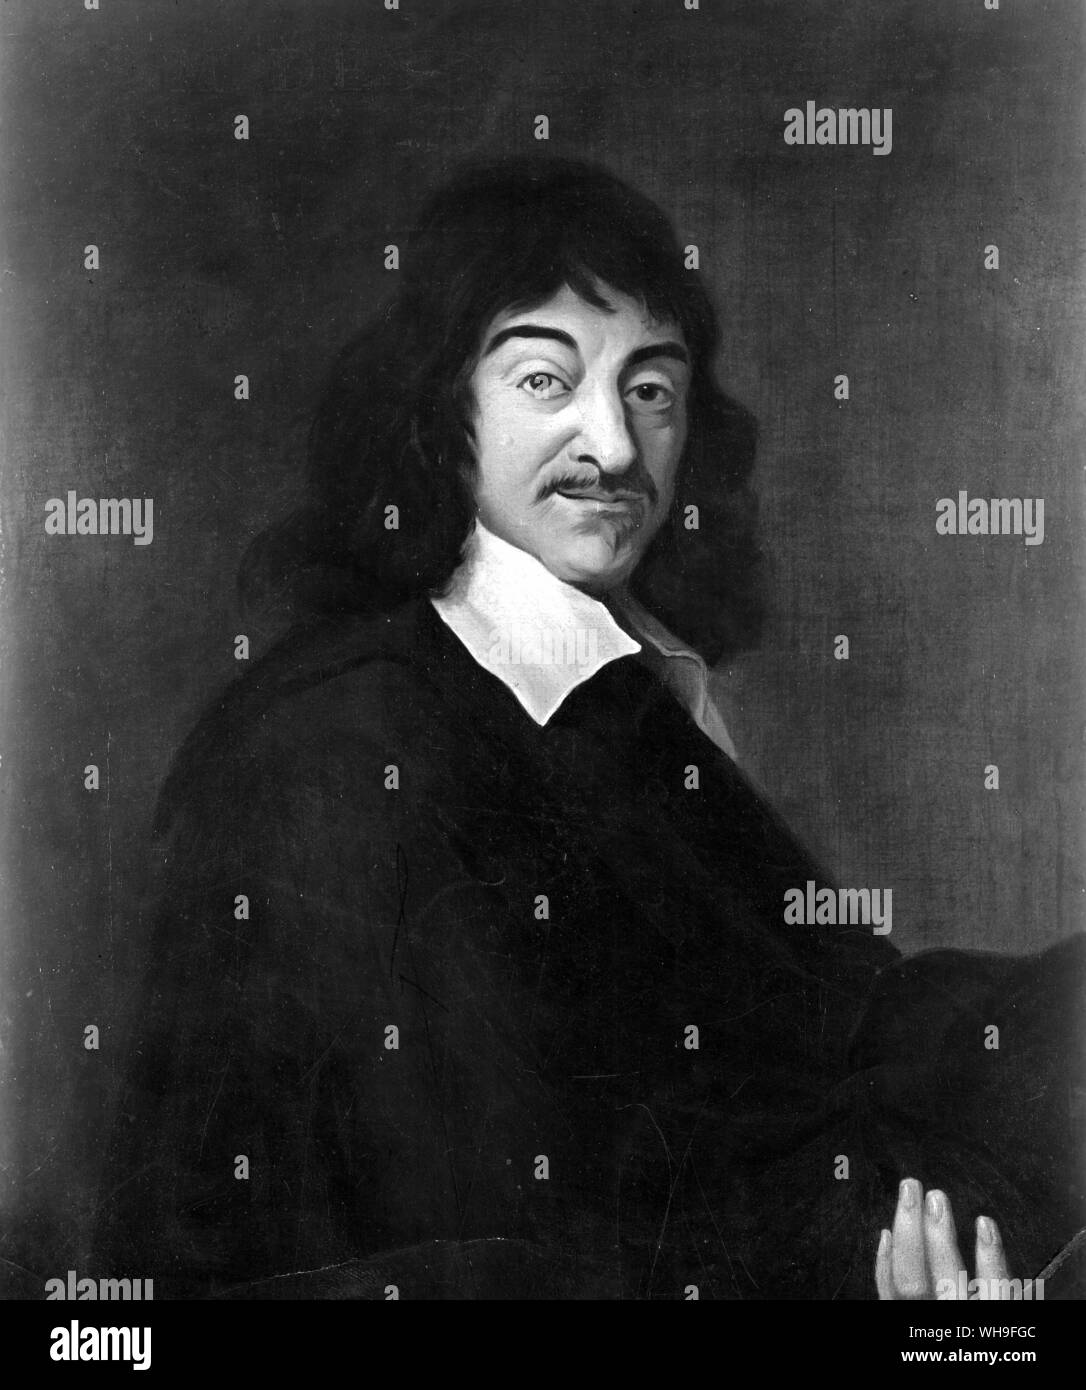 Der französische Philosoph und Mathematiker, Rene Descartes, der wissenschaftlichen Denkens im 17. Jahrhundert reformiert. Von Franz Hals. Stockfoto